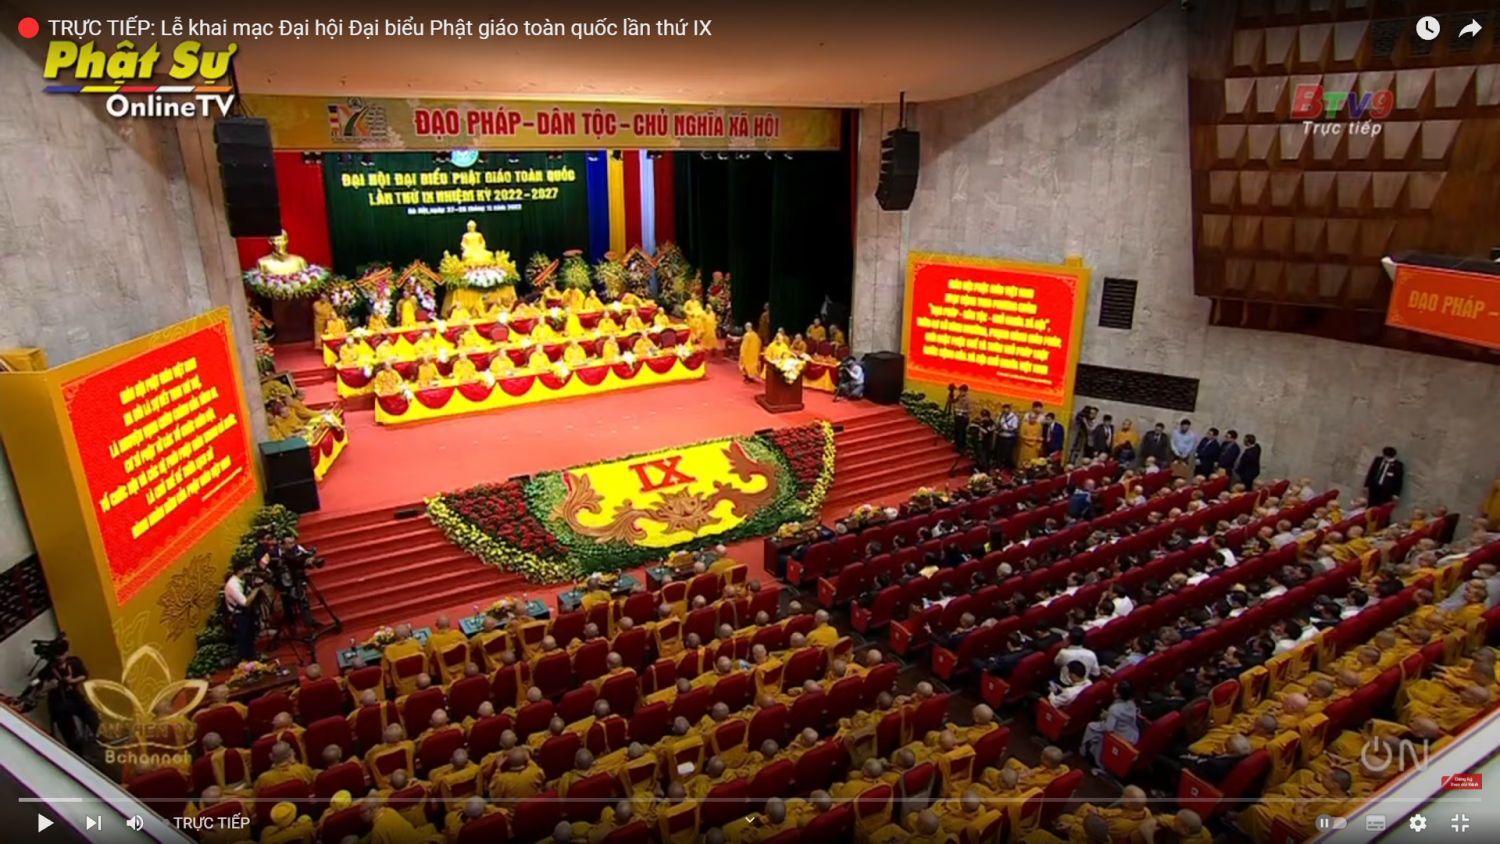 🔴 TRỰC TIẾP: Lễ khai mạc Đại hội Đại biểu Phật giáo toàn quốc lần thứ IX